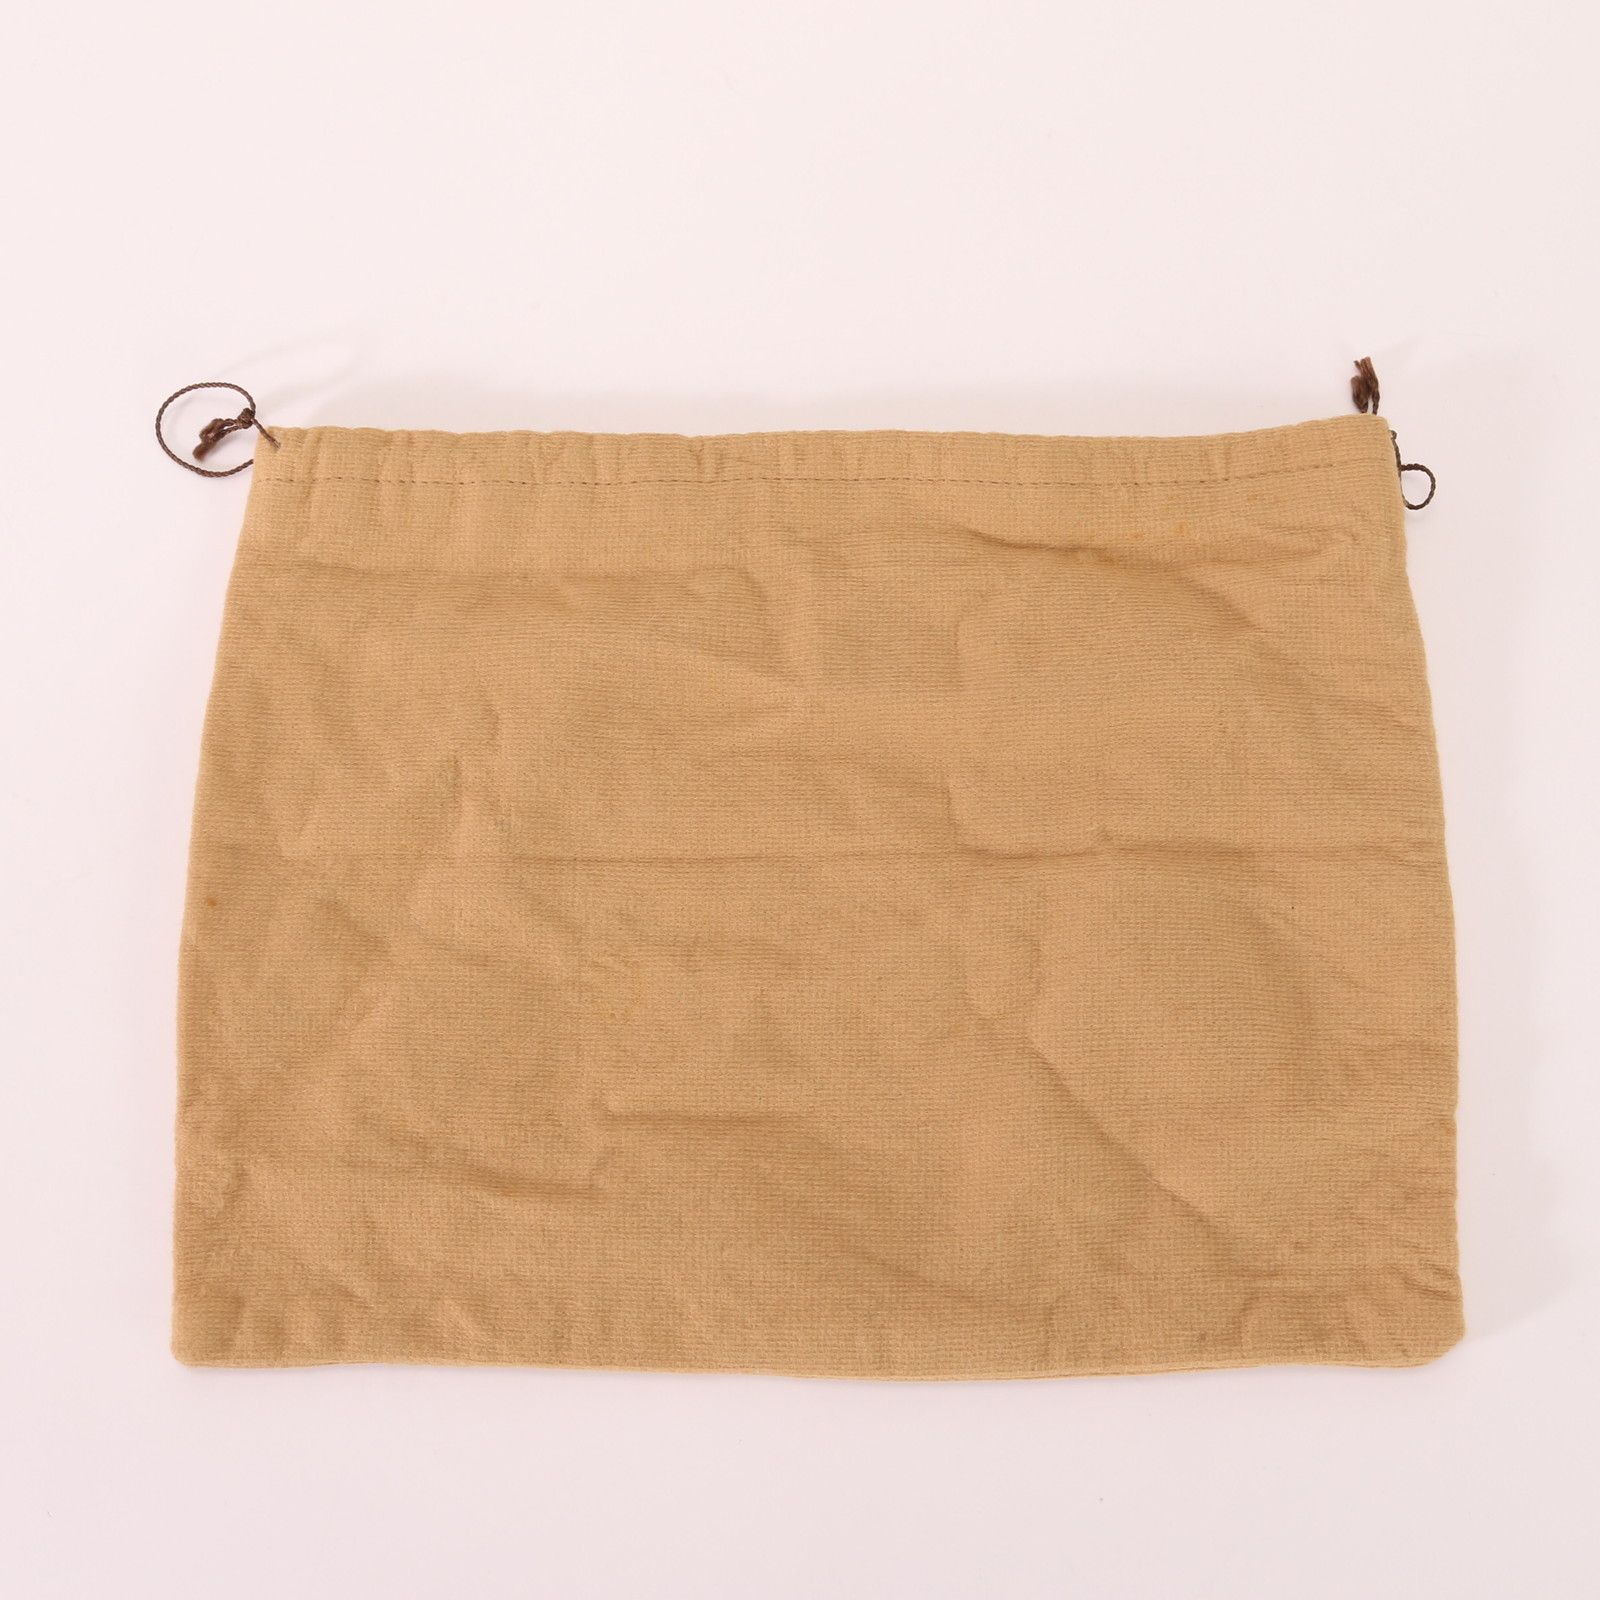 エルメス 保存袋 バッグ 布袋 W32×H25 収納 保管 巾着 ロゴ カバン A4